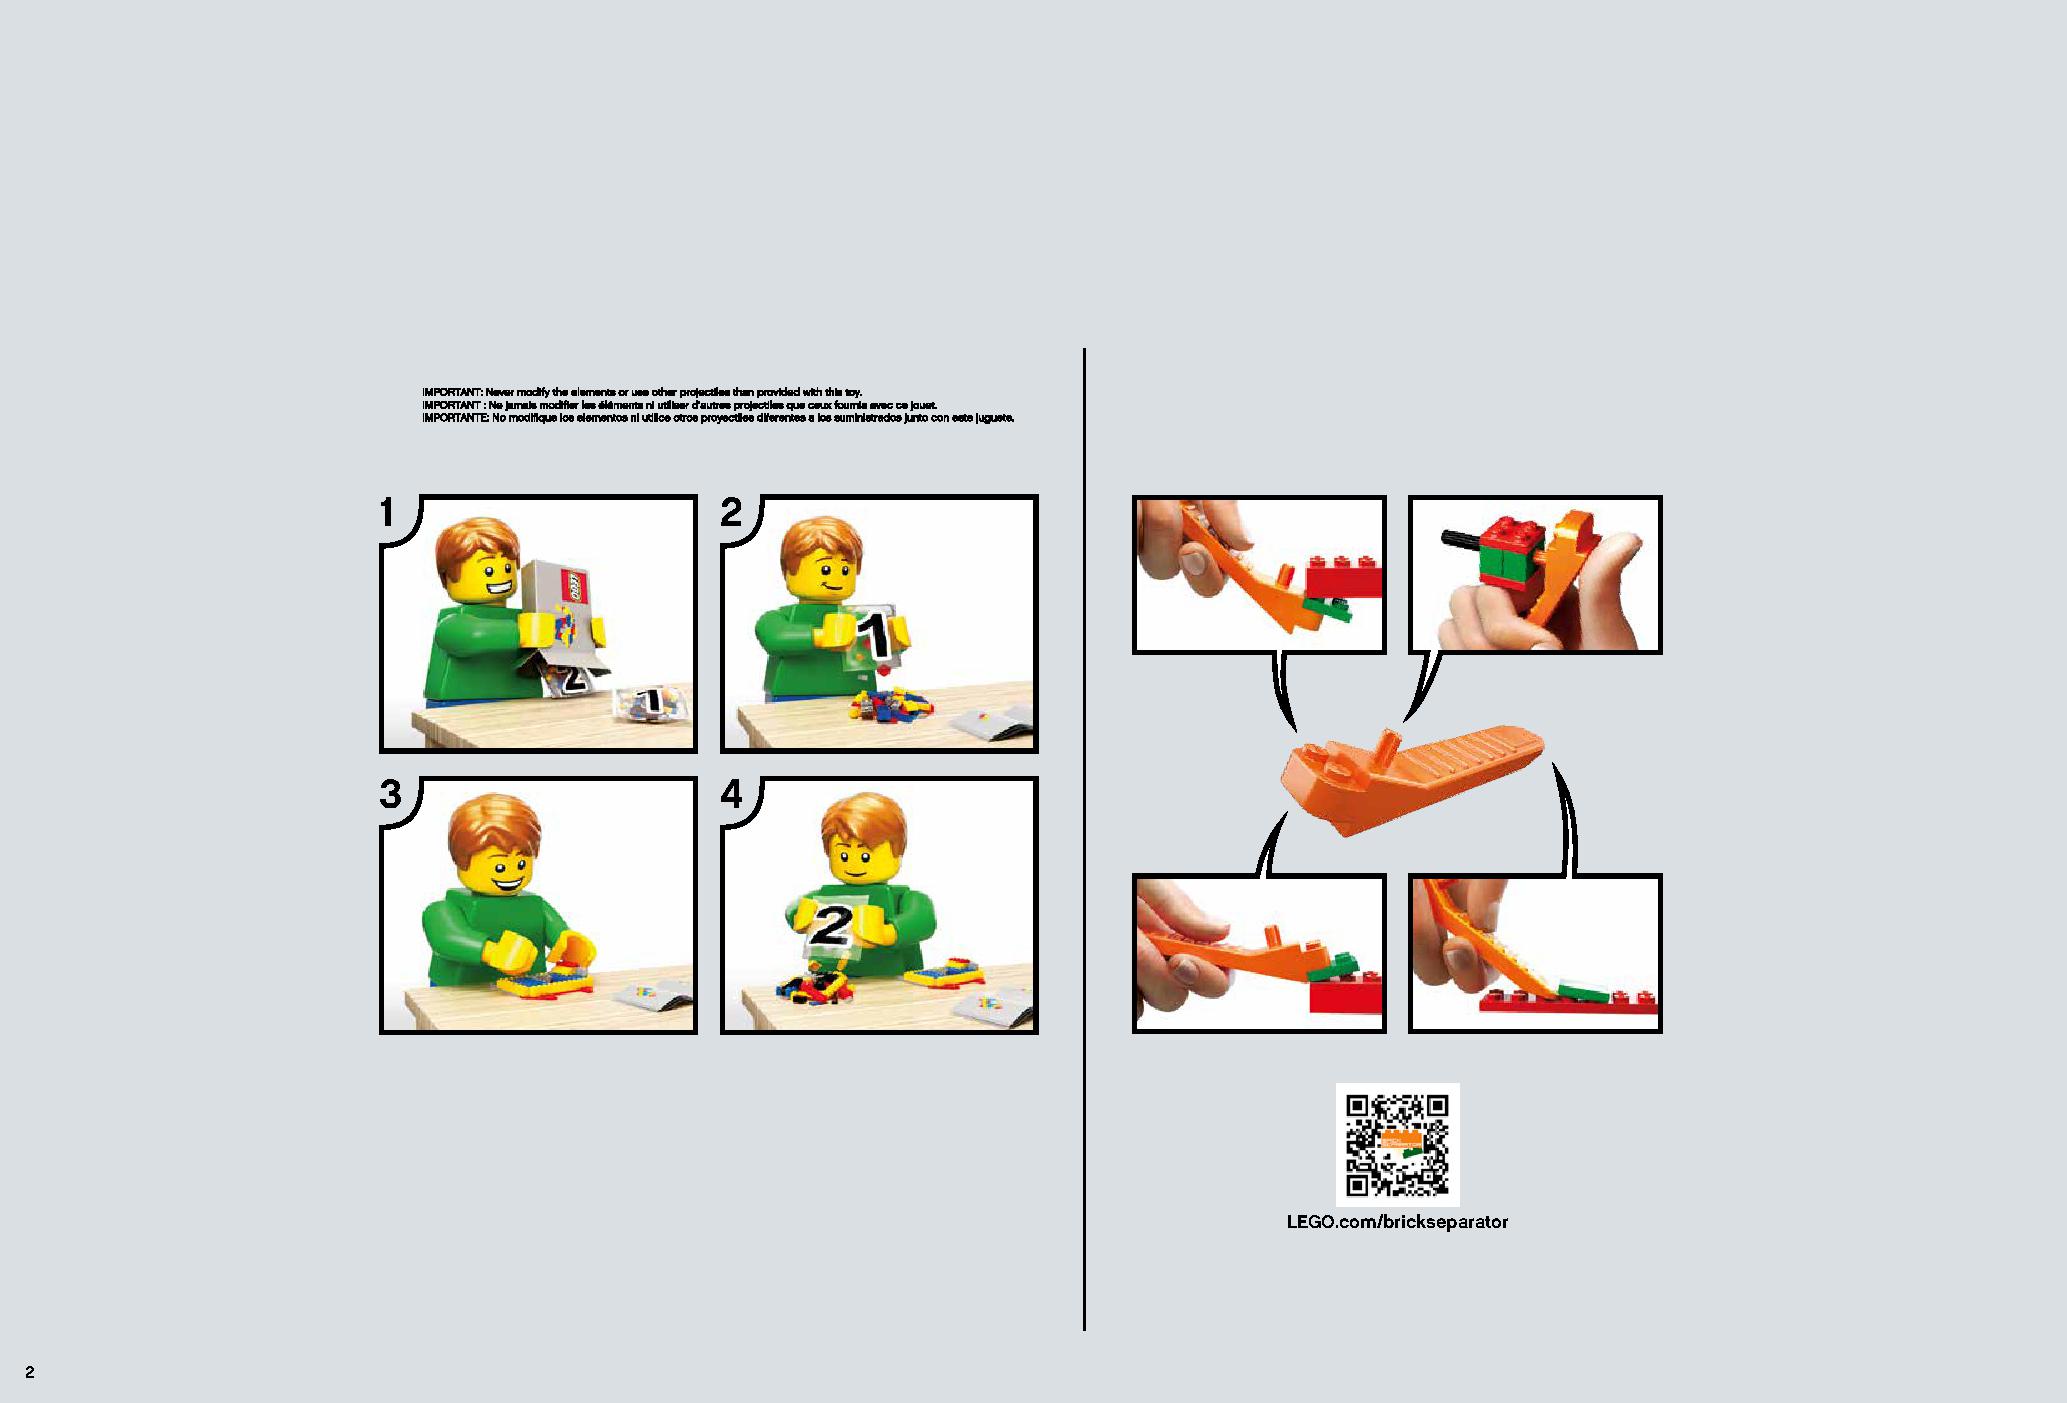 デス・スター 75159 レゴの商品情報 レゴの説明書・組立方法 2 page